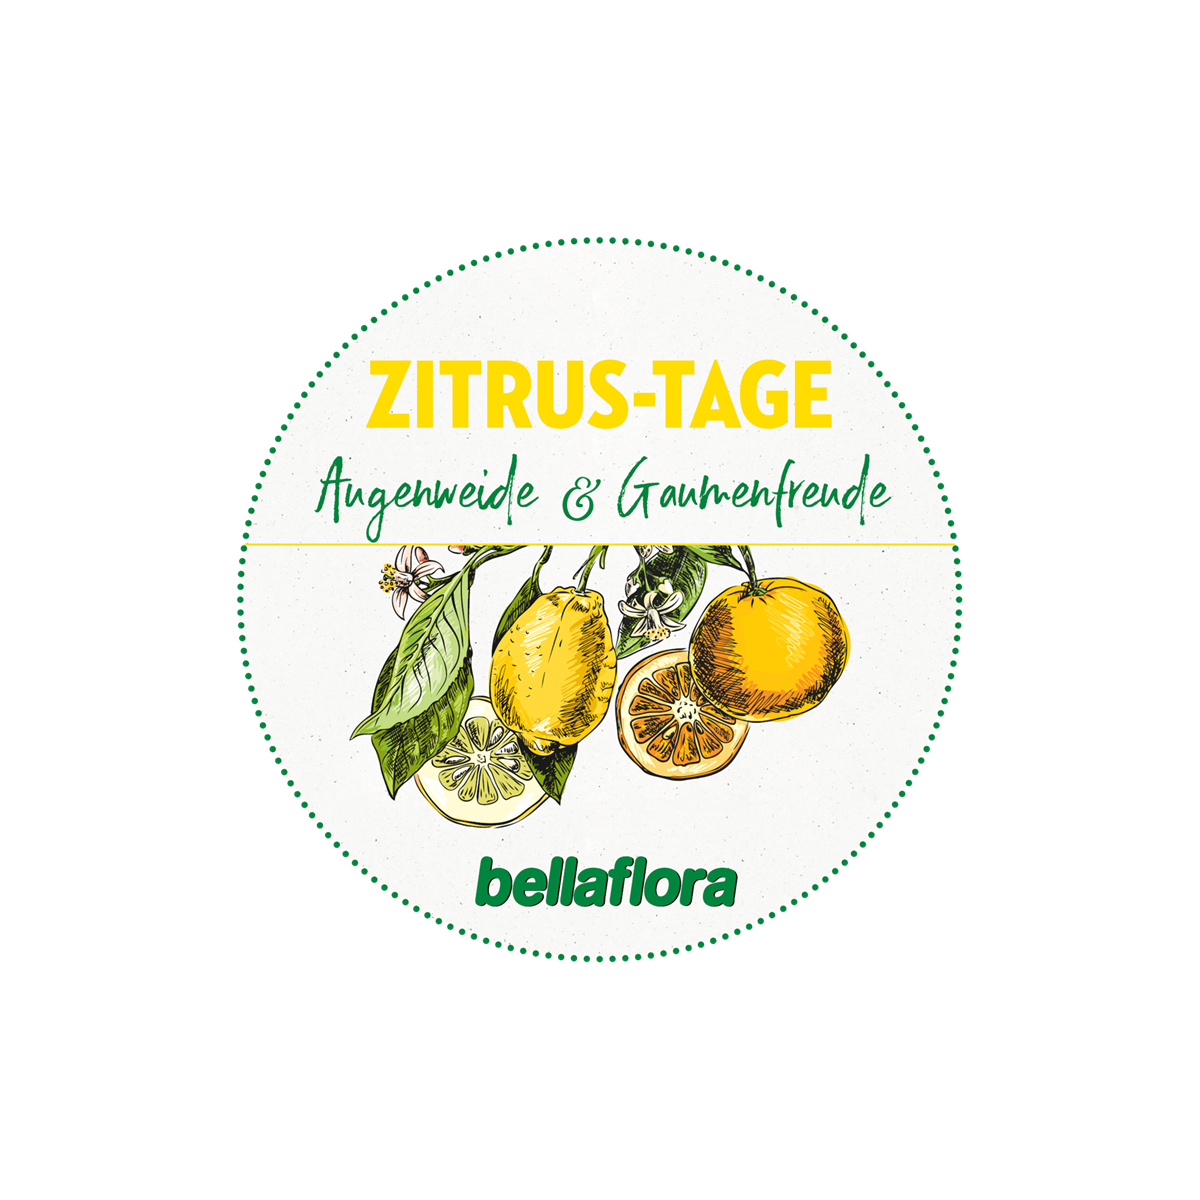 Ein Zitrusmeer mitten in Niederösterreich: bellaflora Zitrus-Roadshow ...